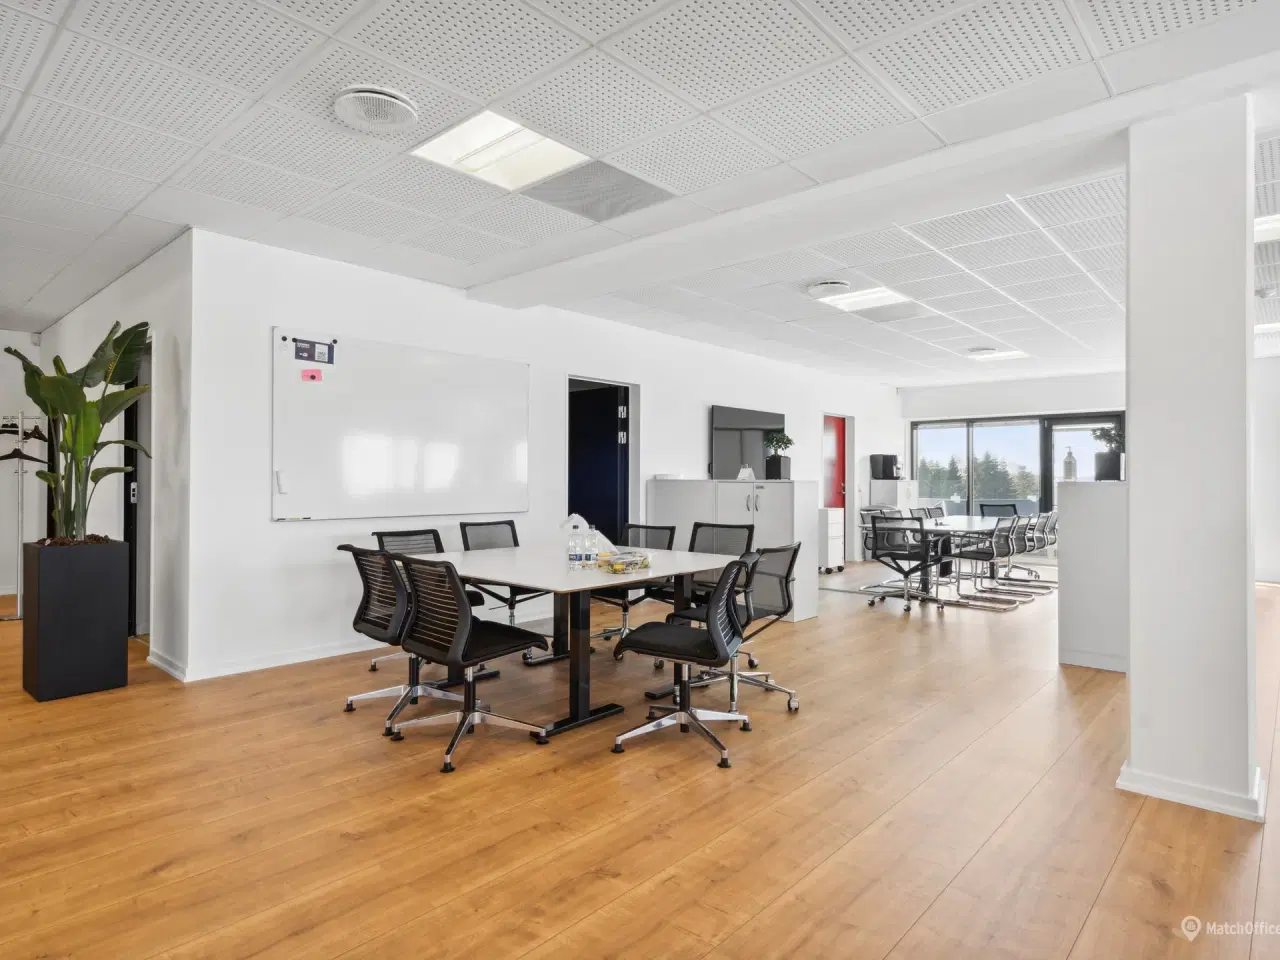 Billede 8 - 342 m² kontor beliggende i meget præsentabel kontorejendom